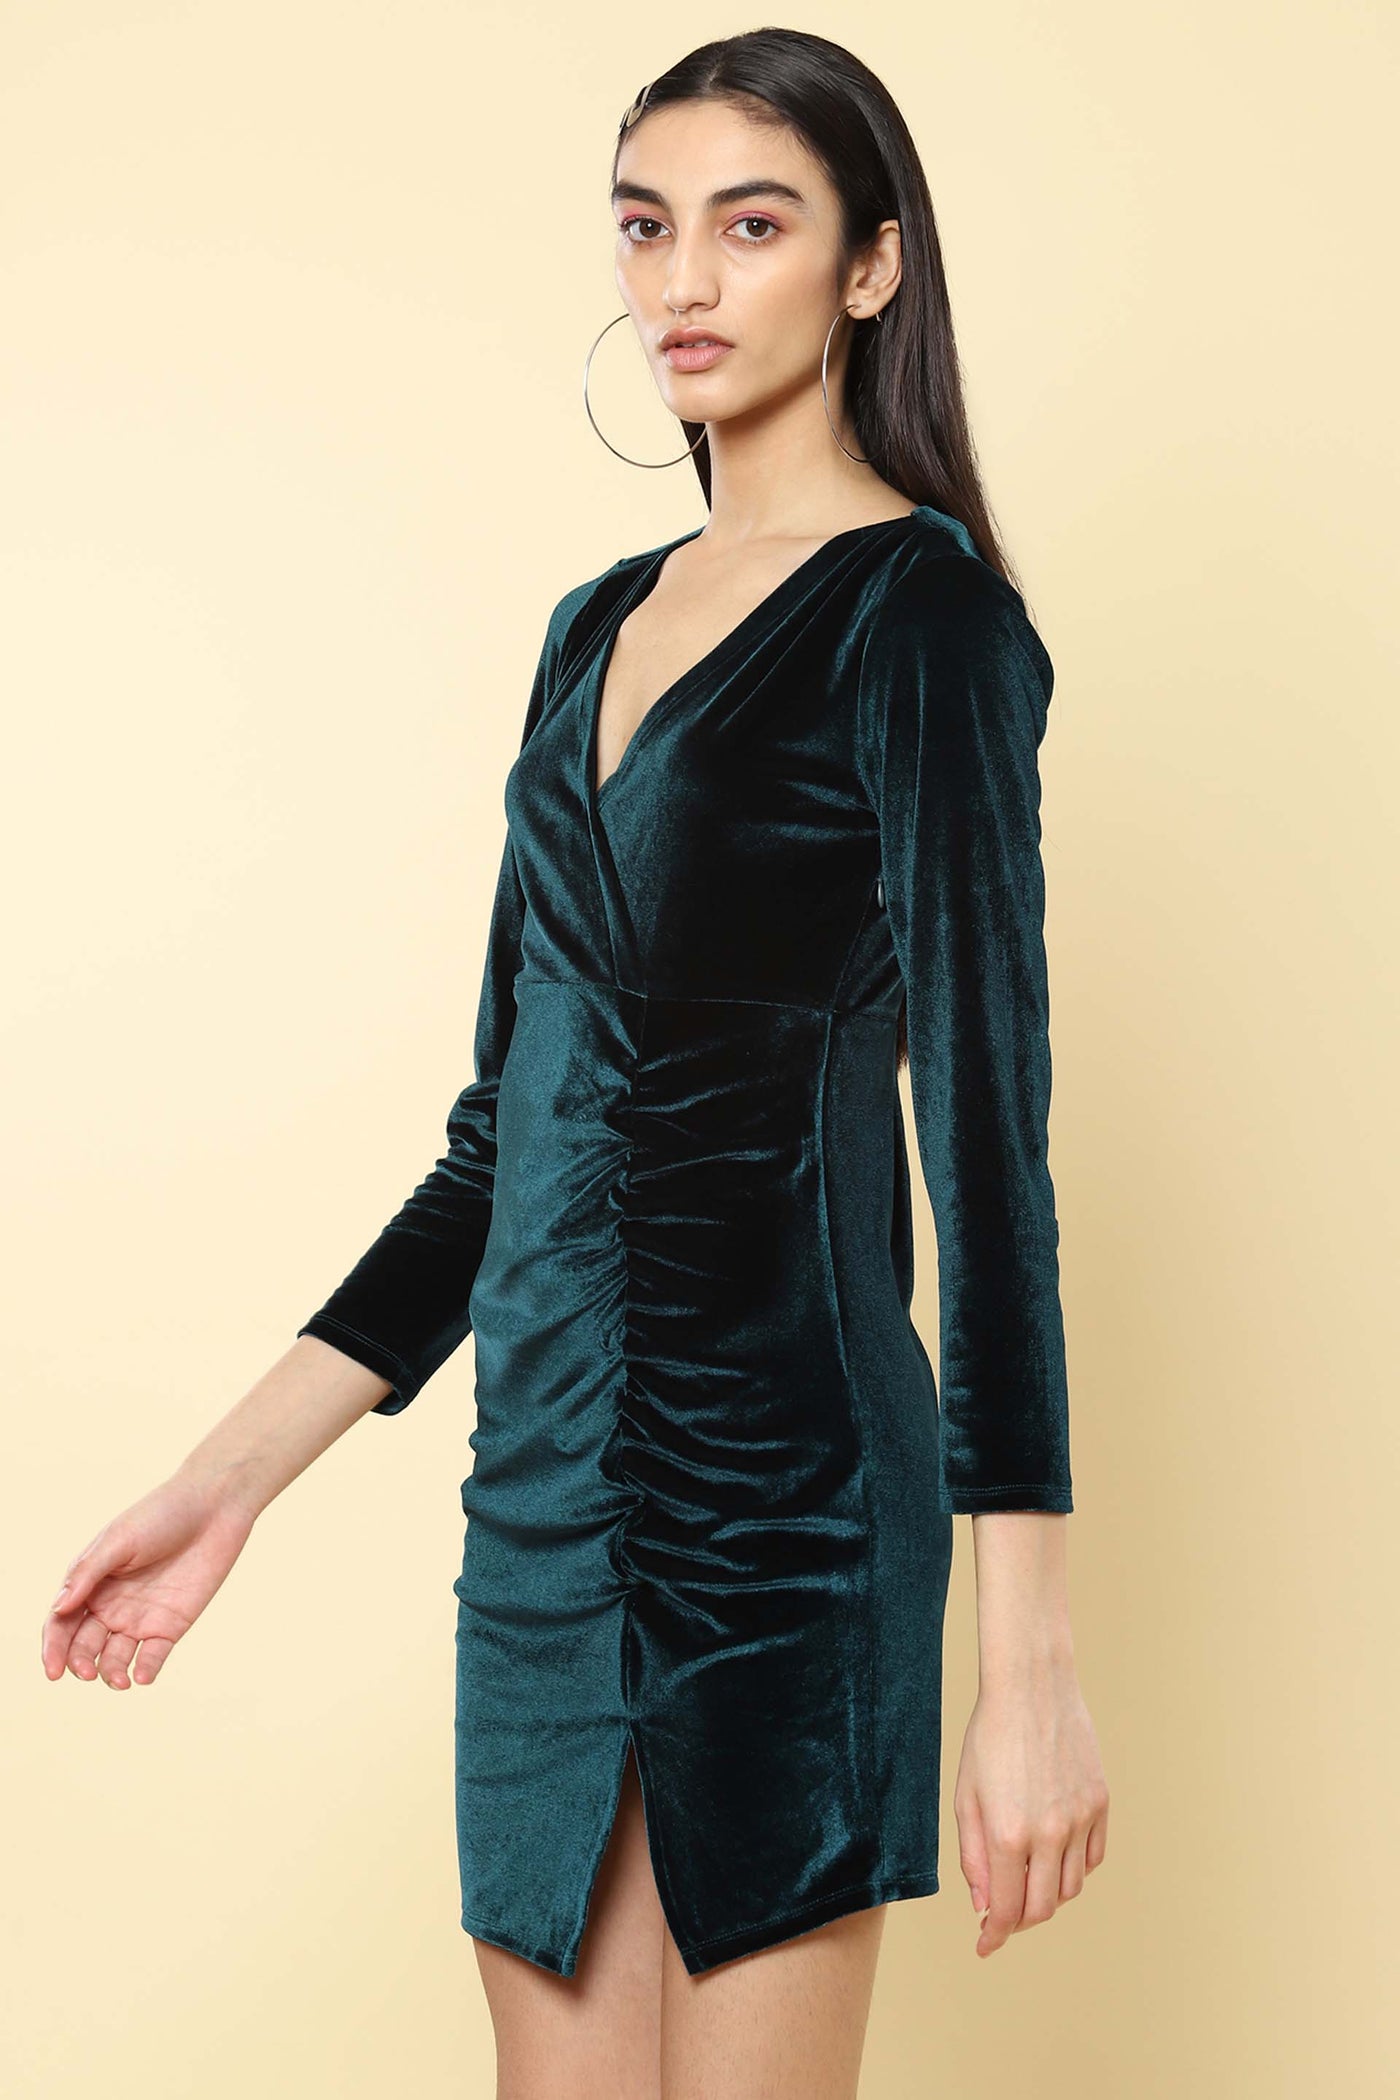 label ritu kumar Emerald Green Bodycon Velvet Short Dress western indian designer wear online shopping melange singapore